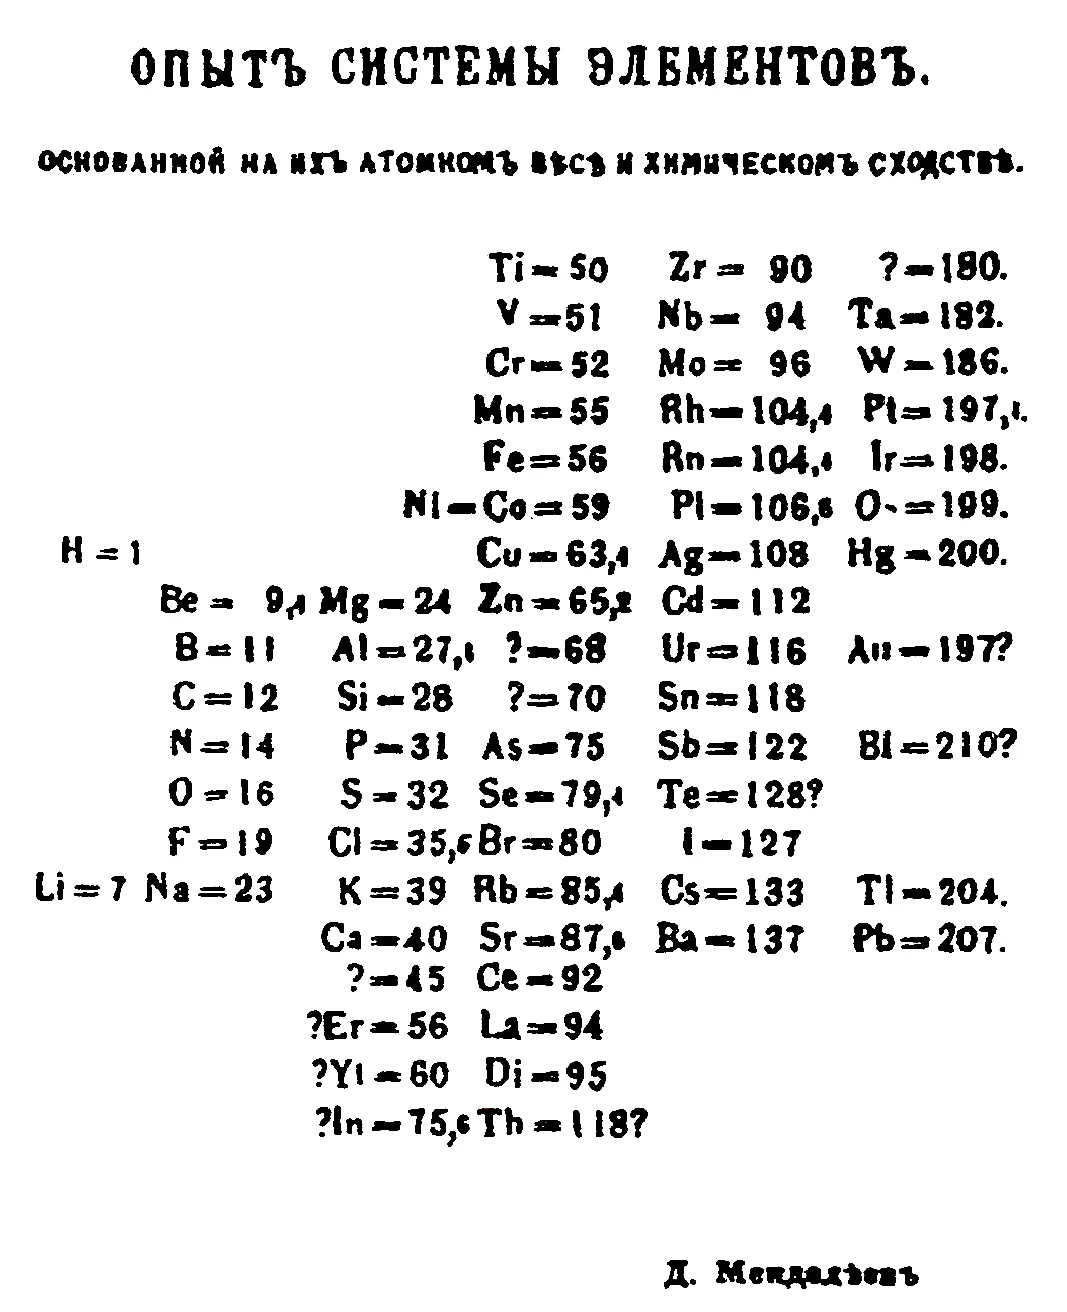 ตารางธาตุ-เมนเดเลเยฟ-Mendeleev-s